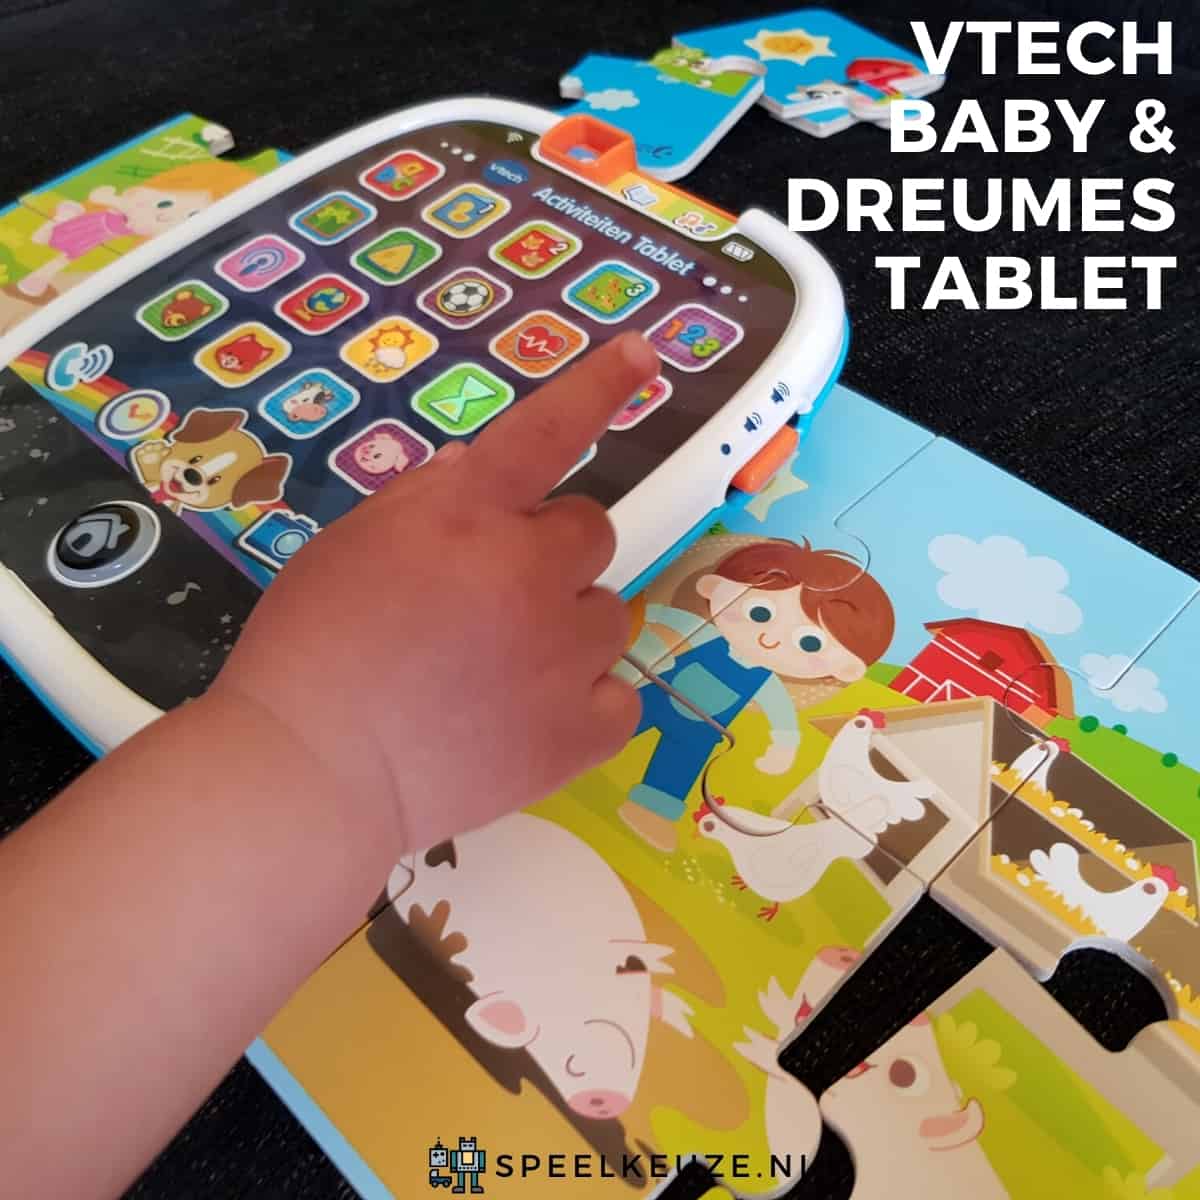 Lo mejor para bebés y niños pequeños: tableta de actividades Vtech